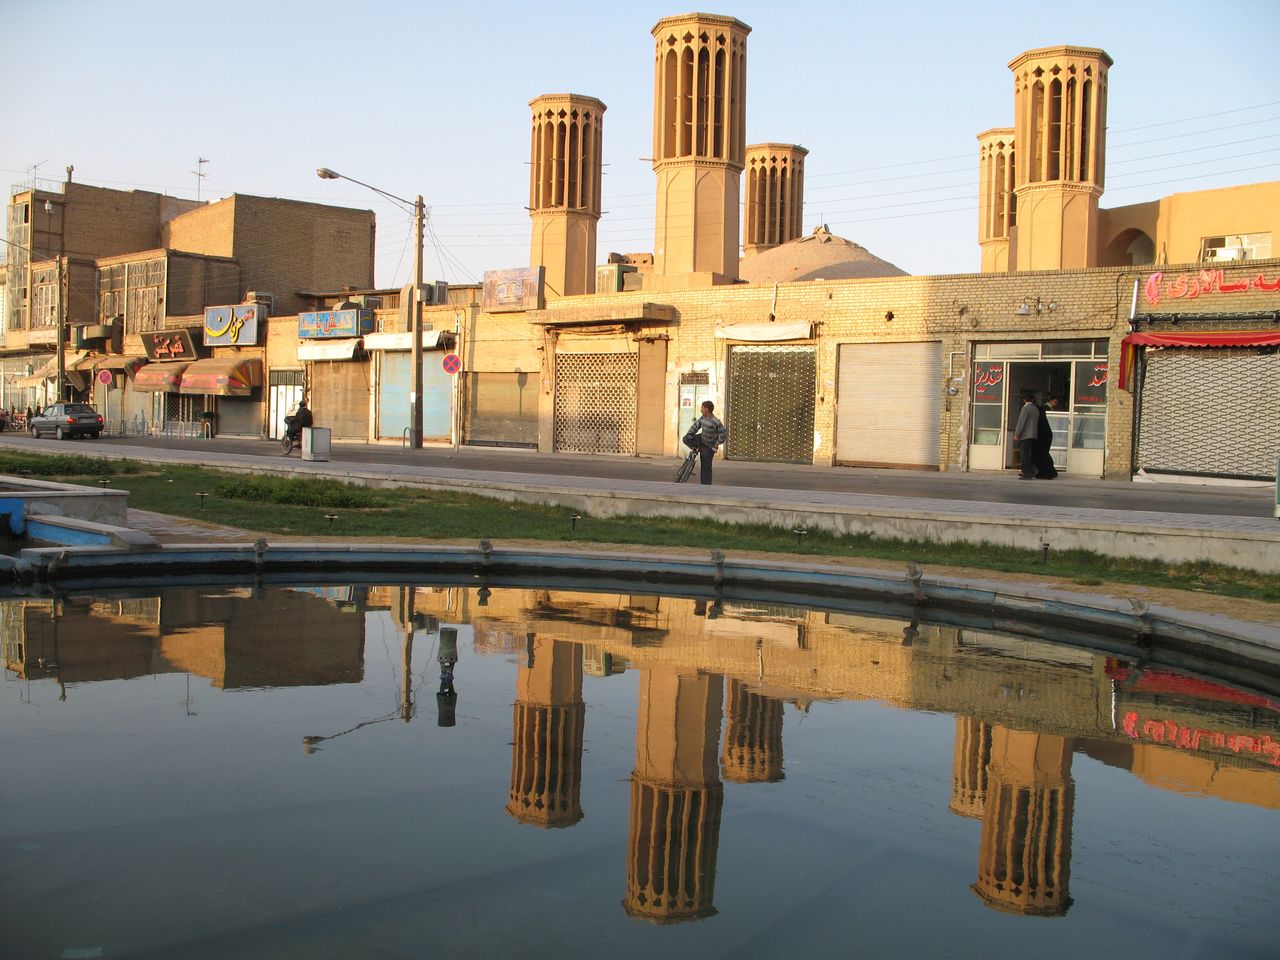 Łapacze wiatru w mieście Jazd - współczesny widok instalacji